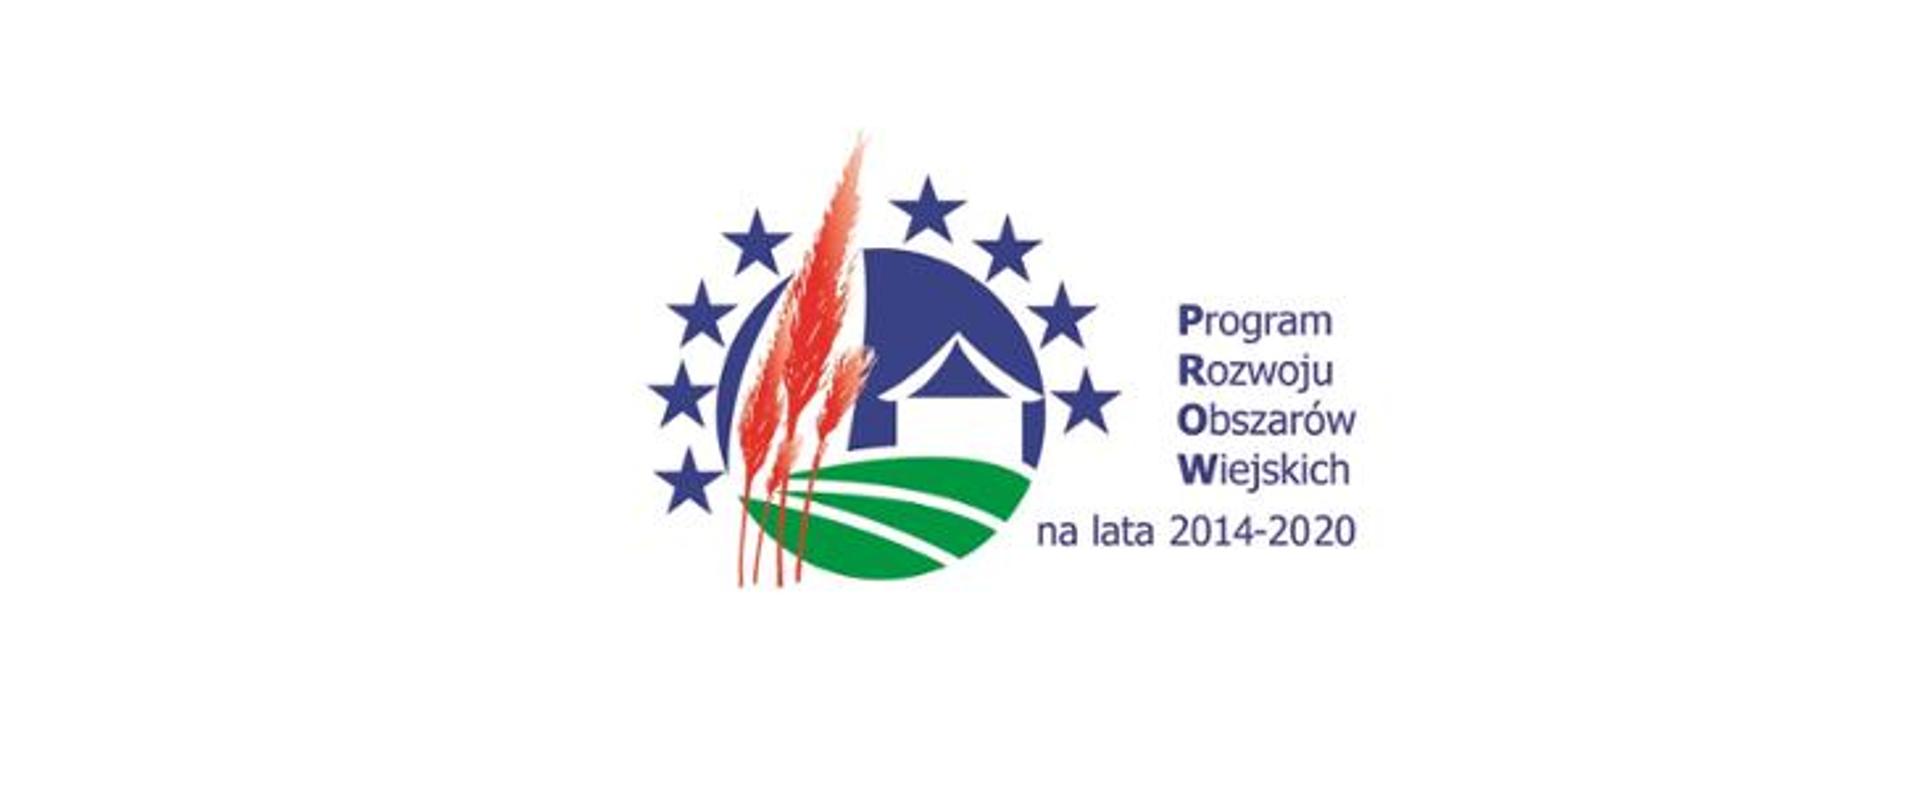 Logo z domem, zielonym polem i czerwonymi kłosami. Nad nimi niebieskie gwiazdki. Program Rozwoju Obszarów Wiejskich.